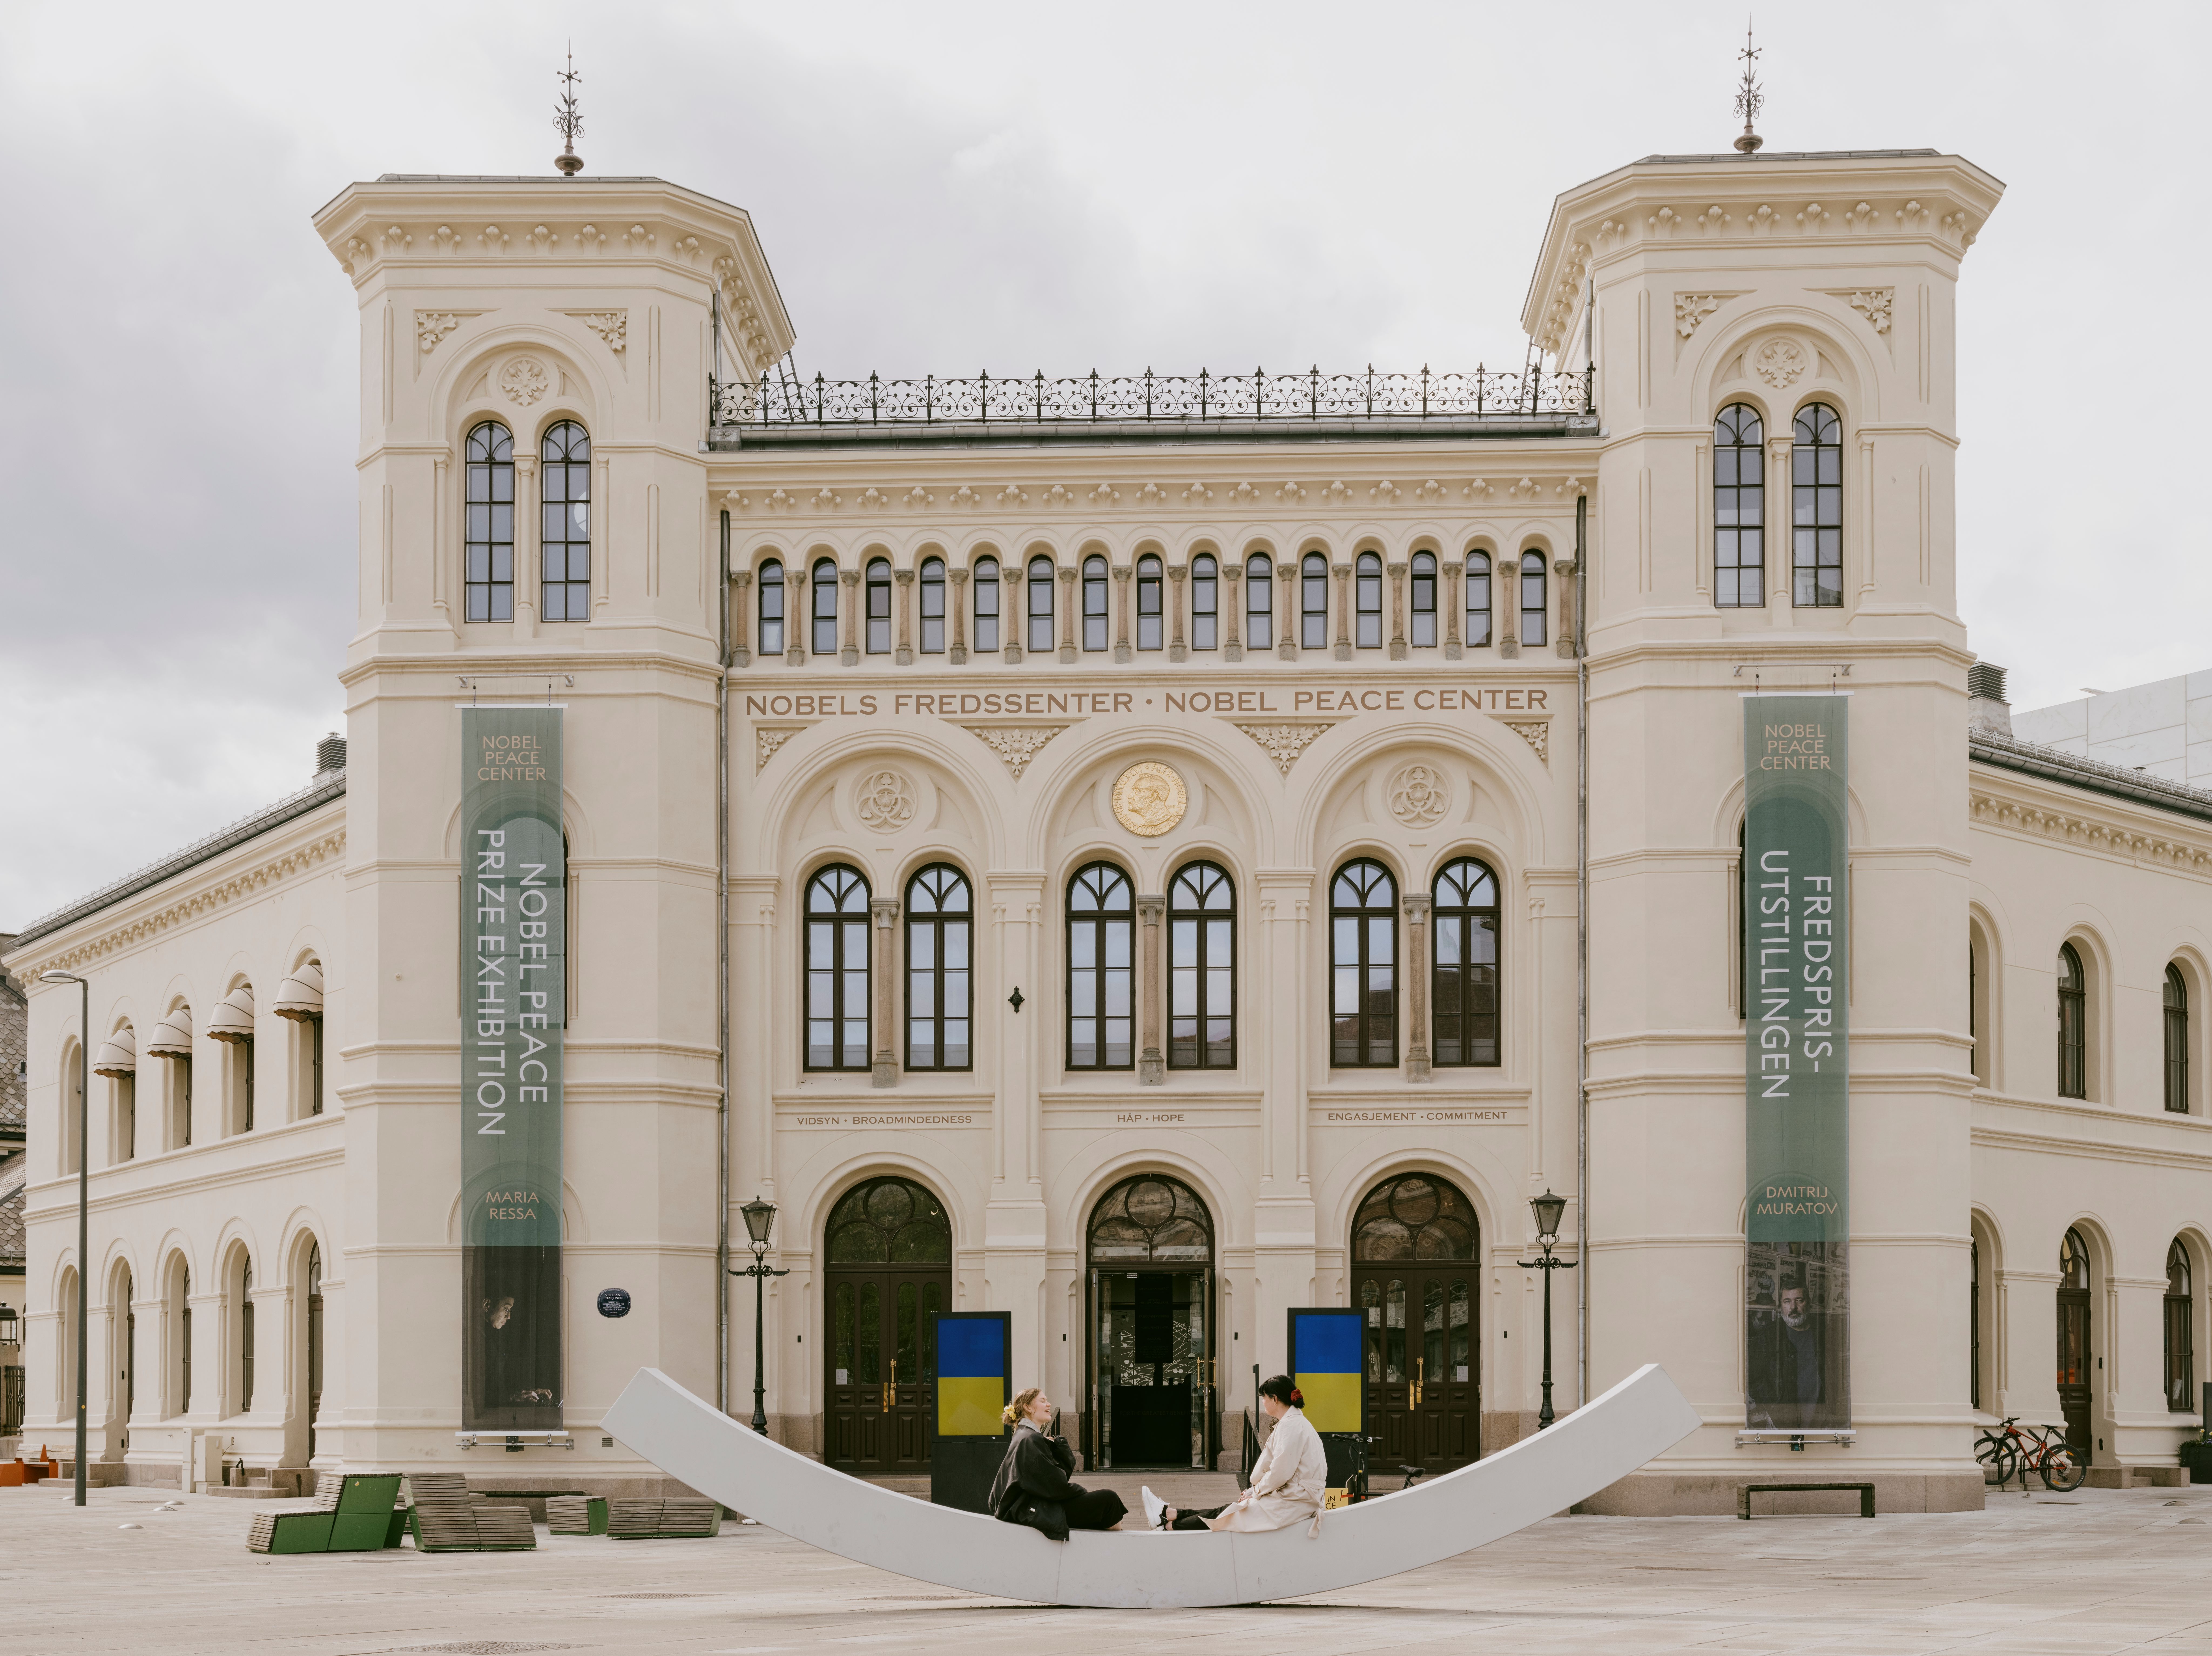 Nobels Fredssenter fasade